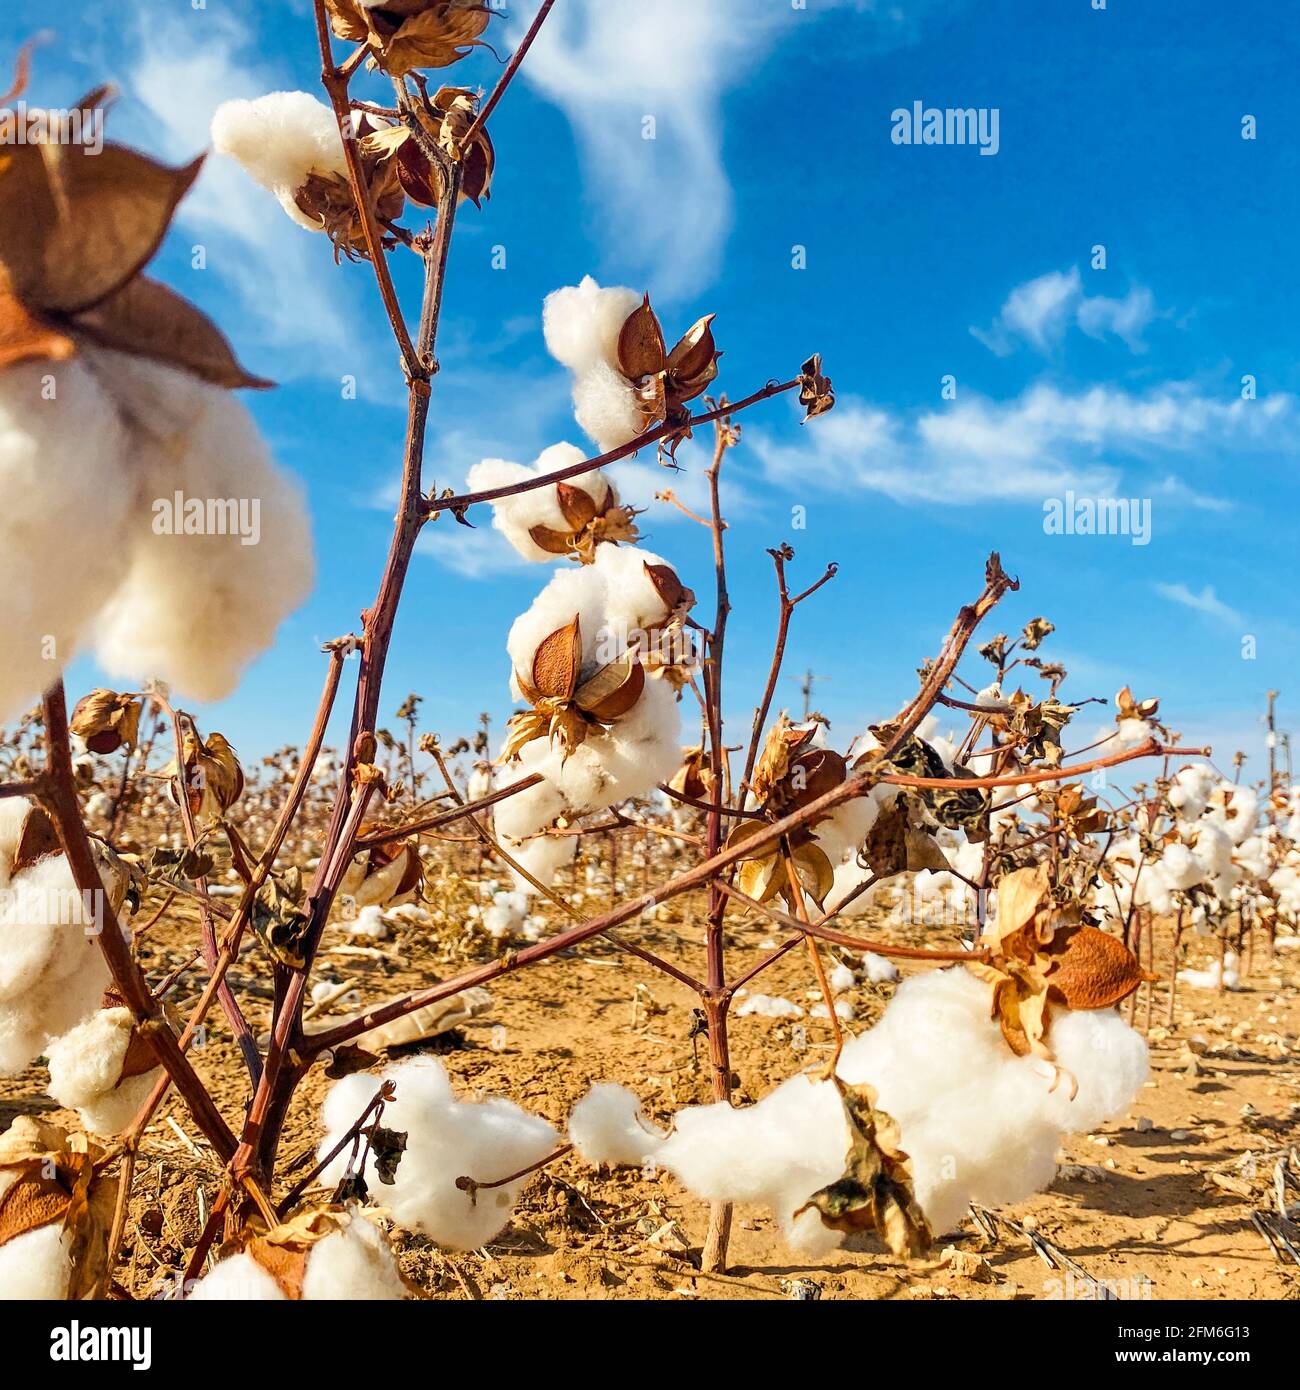 Landscape view with cotton bush Stock Photo